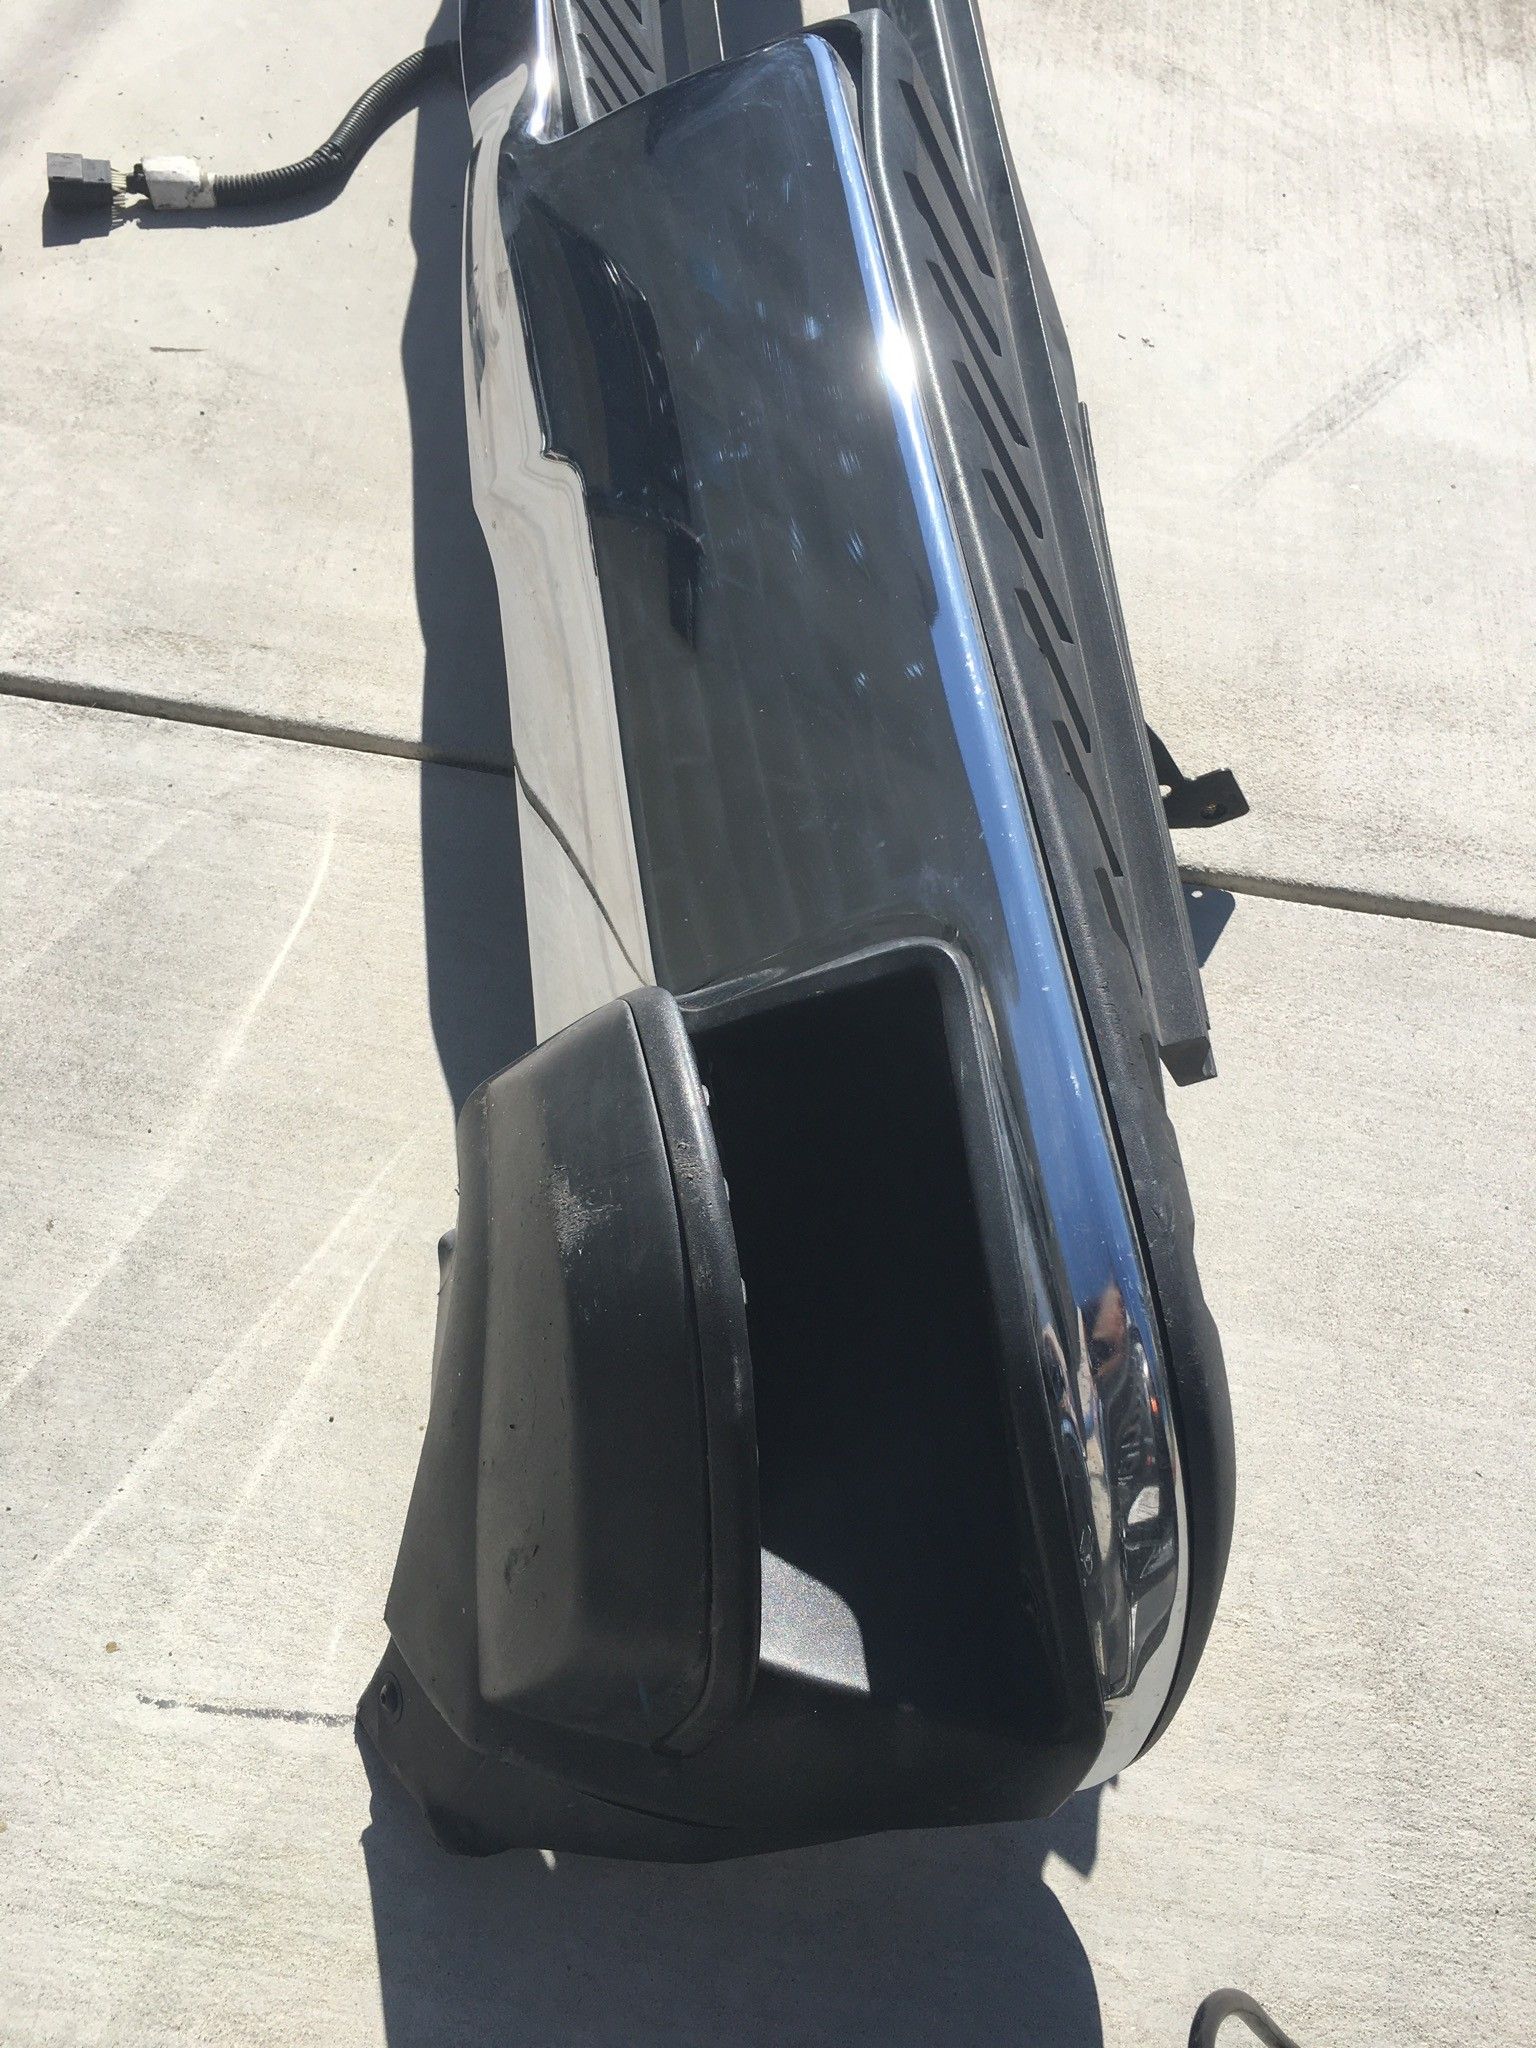 2015 Chevy Silverado Rear Bumper (Dent)